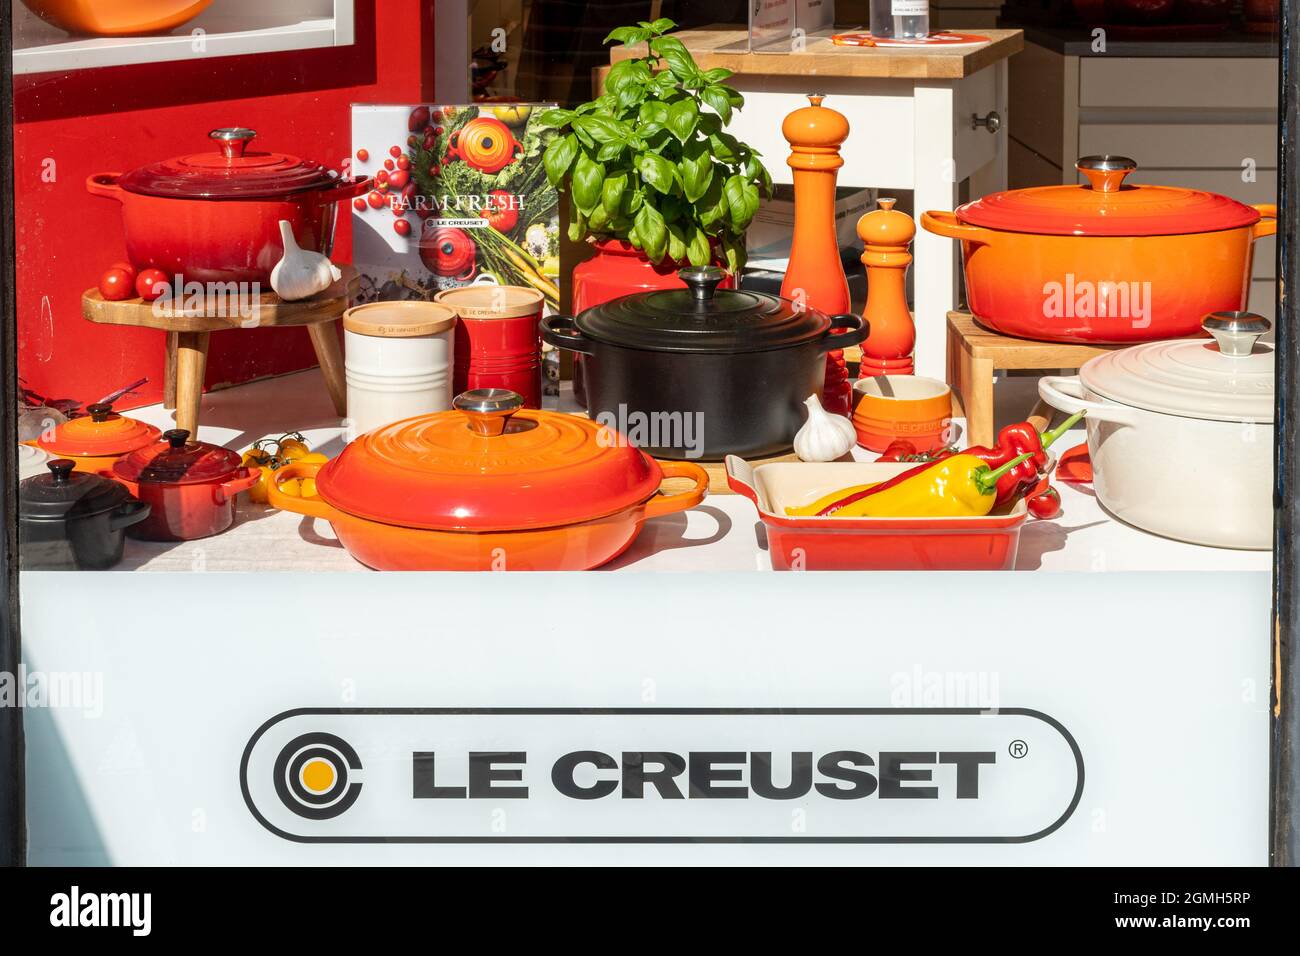 Le Creuset vetrina in negozio o negozio davanti, rivenditore francese di utensili da cucina, meglio noto per le tovaglie smaltate colorate in ghisa, Regno Unito Foto Stock